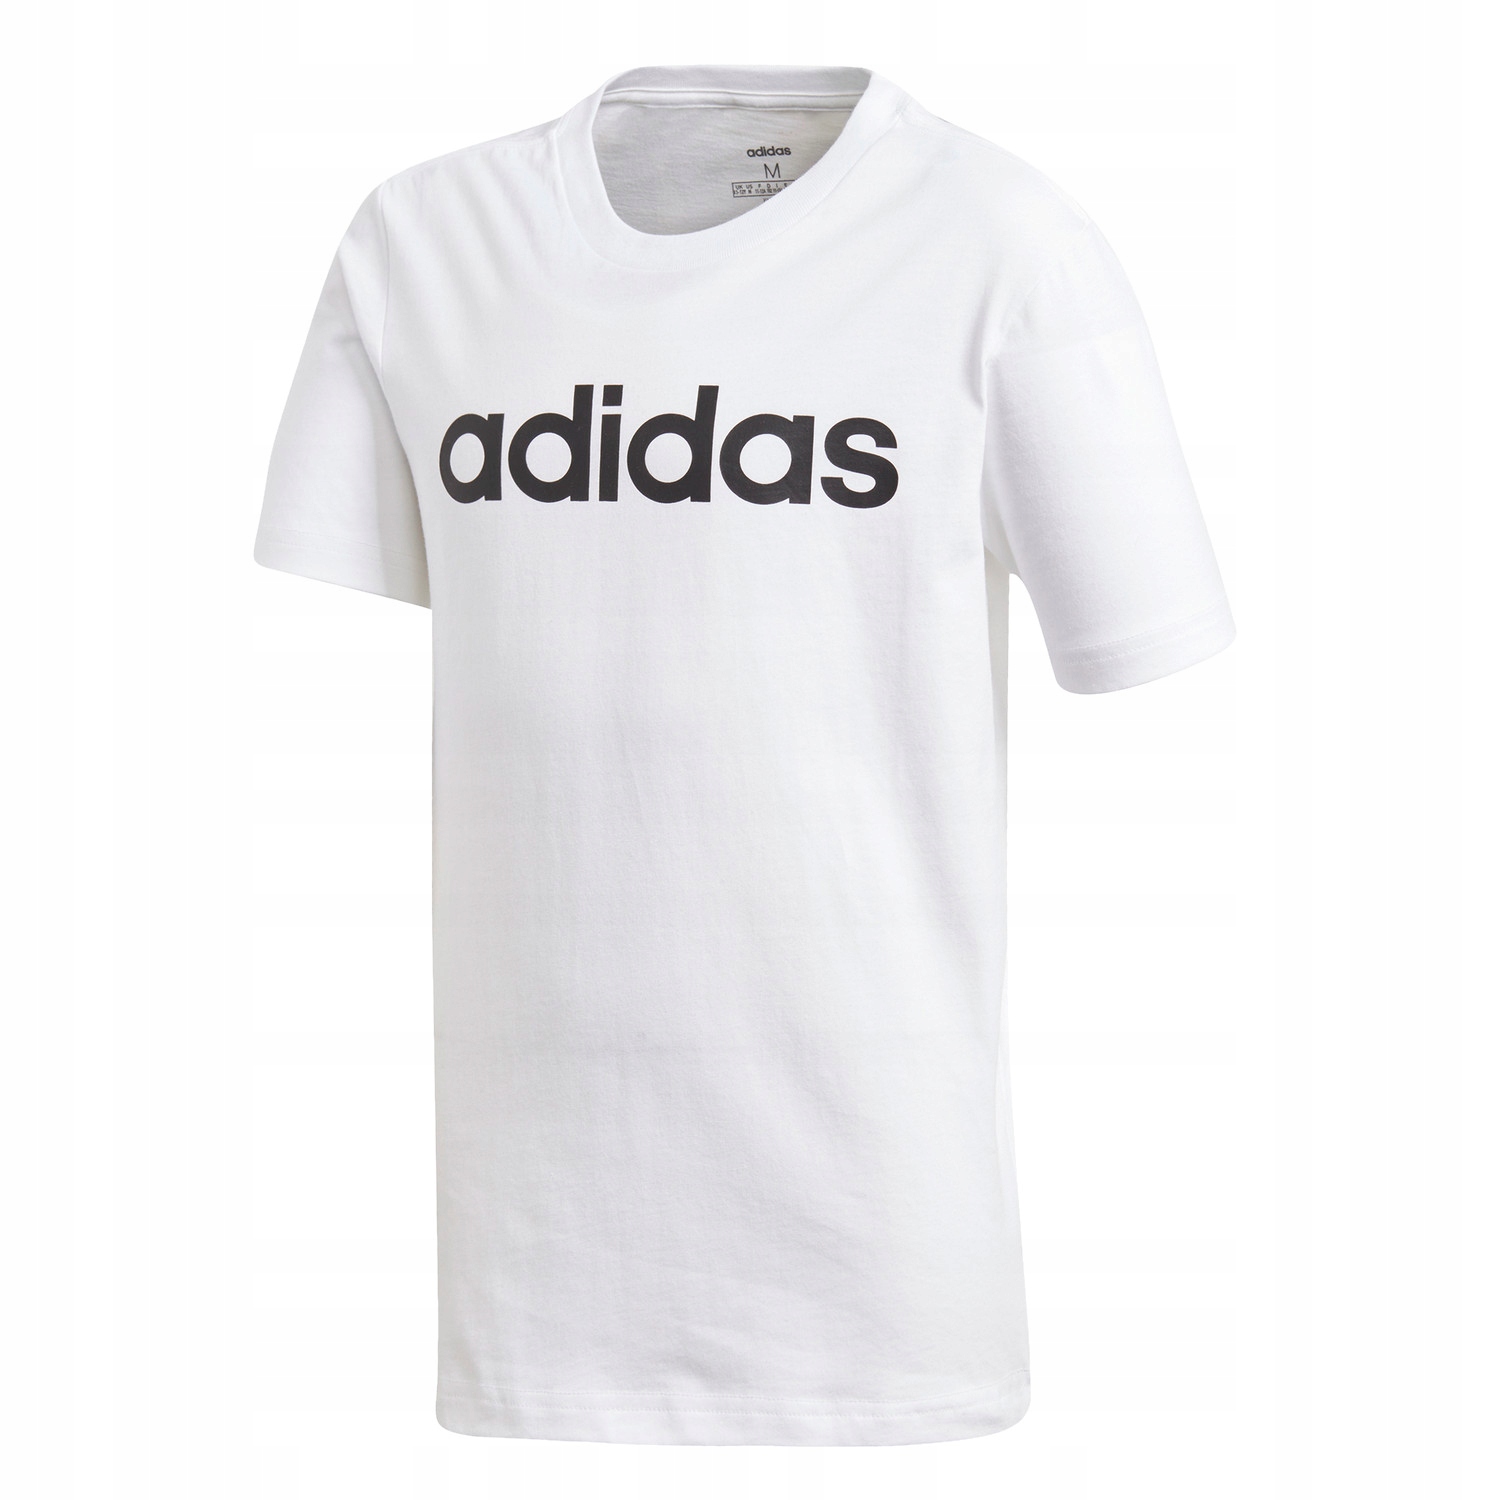 Футболка Adidas Cotton для мальчиков JUNIOR 176